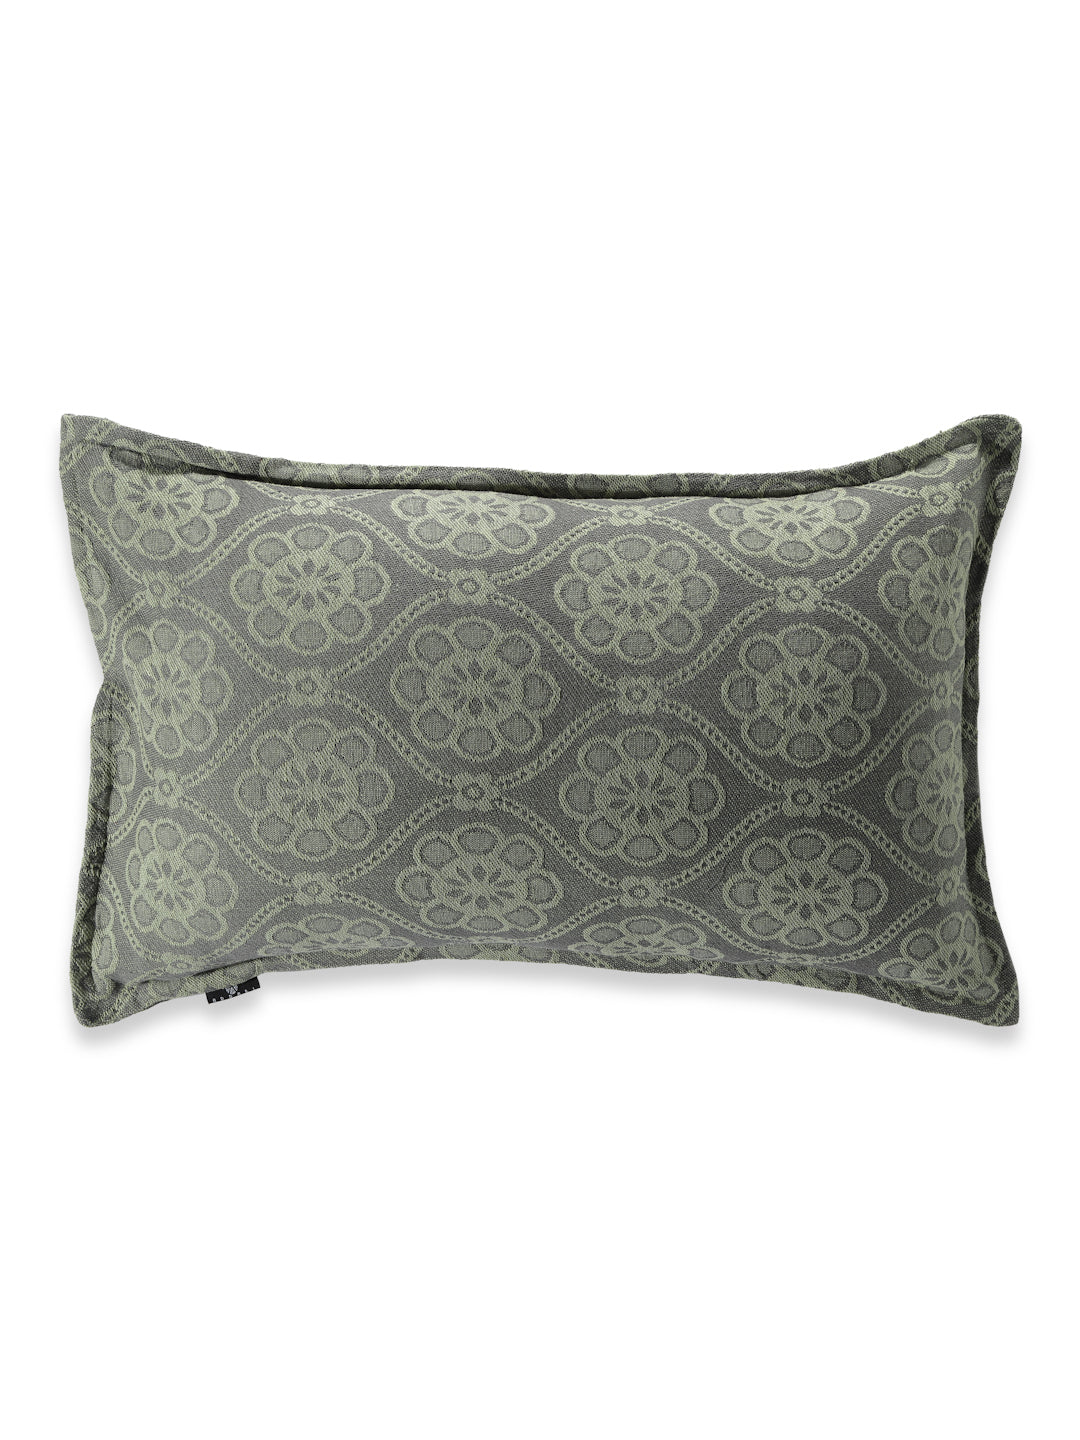 Arrabi Beige Floral Handwoven Cotton Set of 2 Pillow Covers (70 x 45 cm)